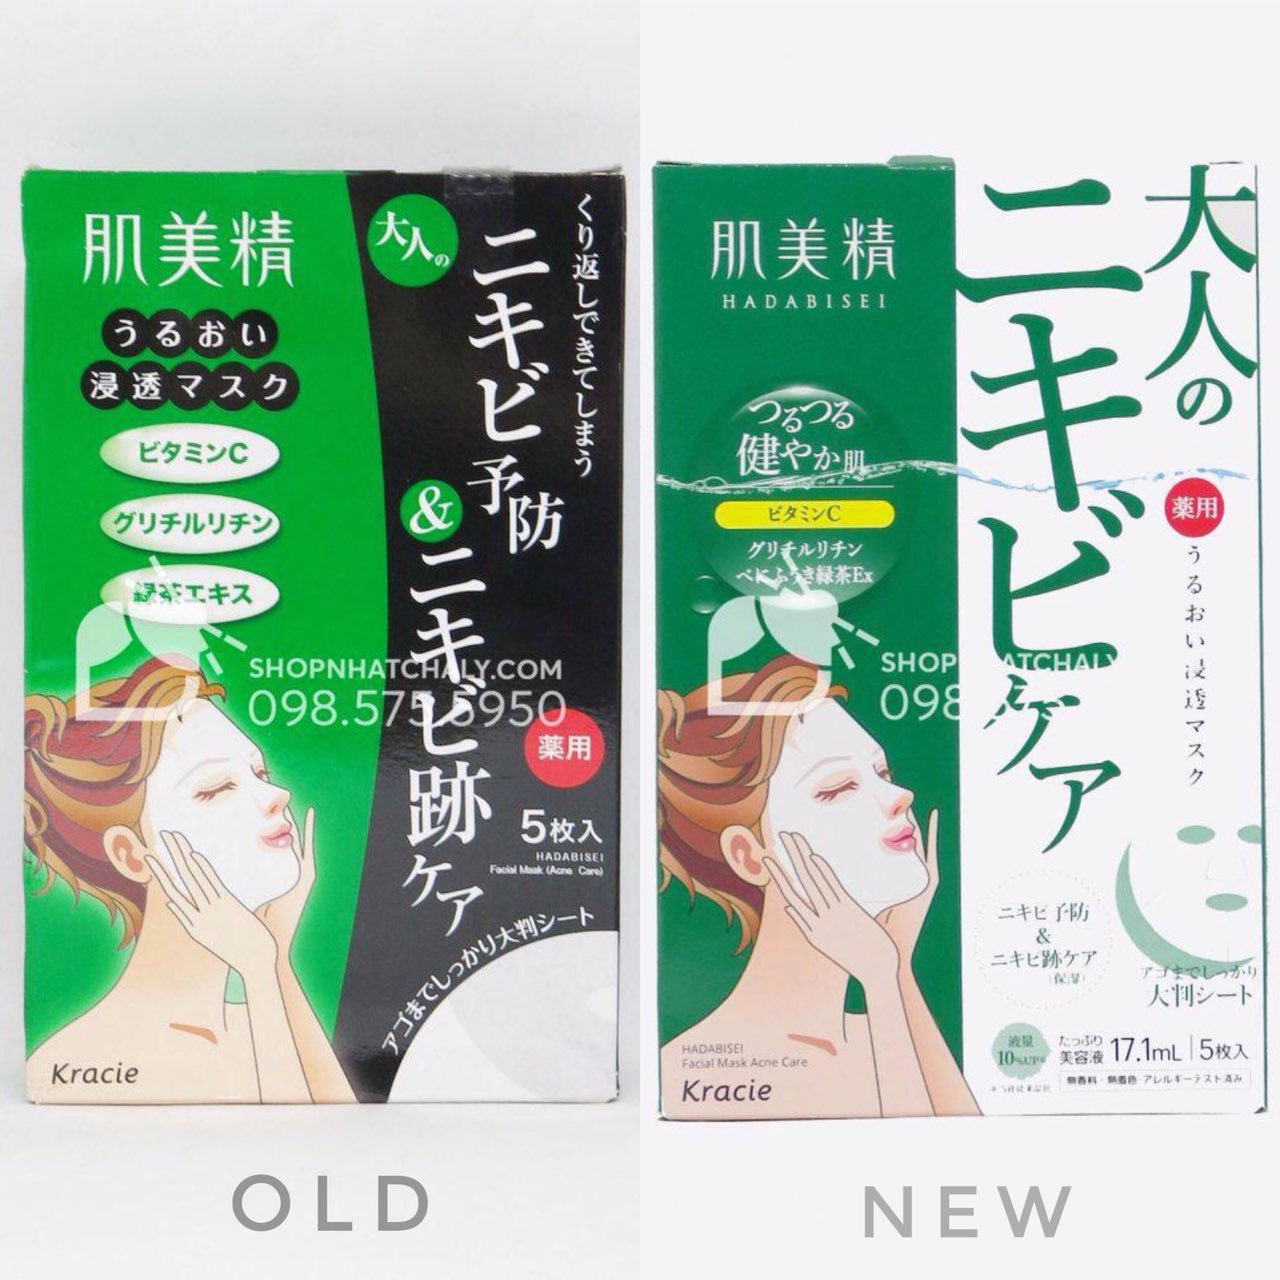 Mẫu bao bì mới đổi của mặt nạ cho da dầu mụn Hadabisei của Kracie Nhật